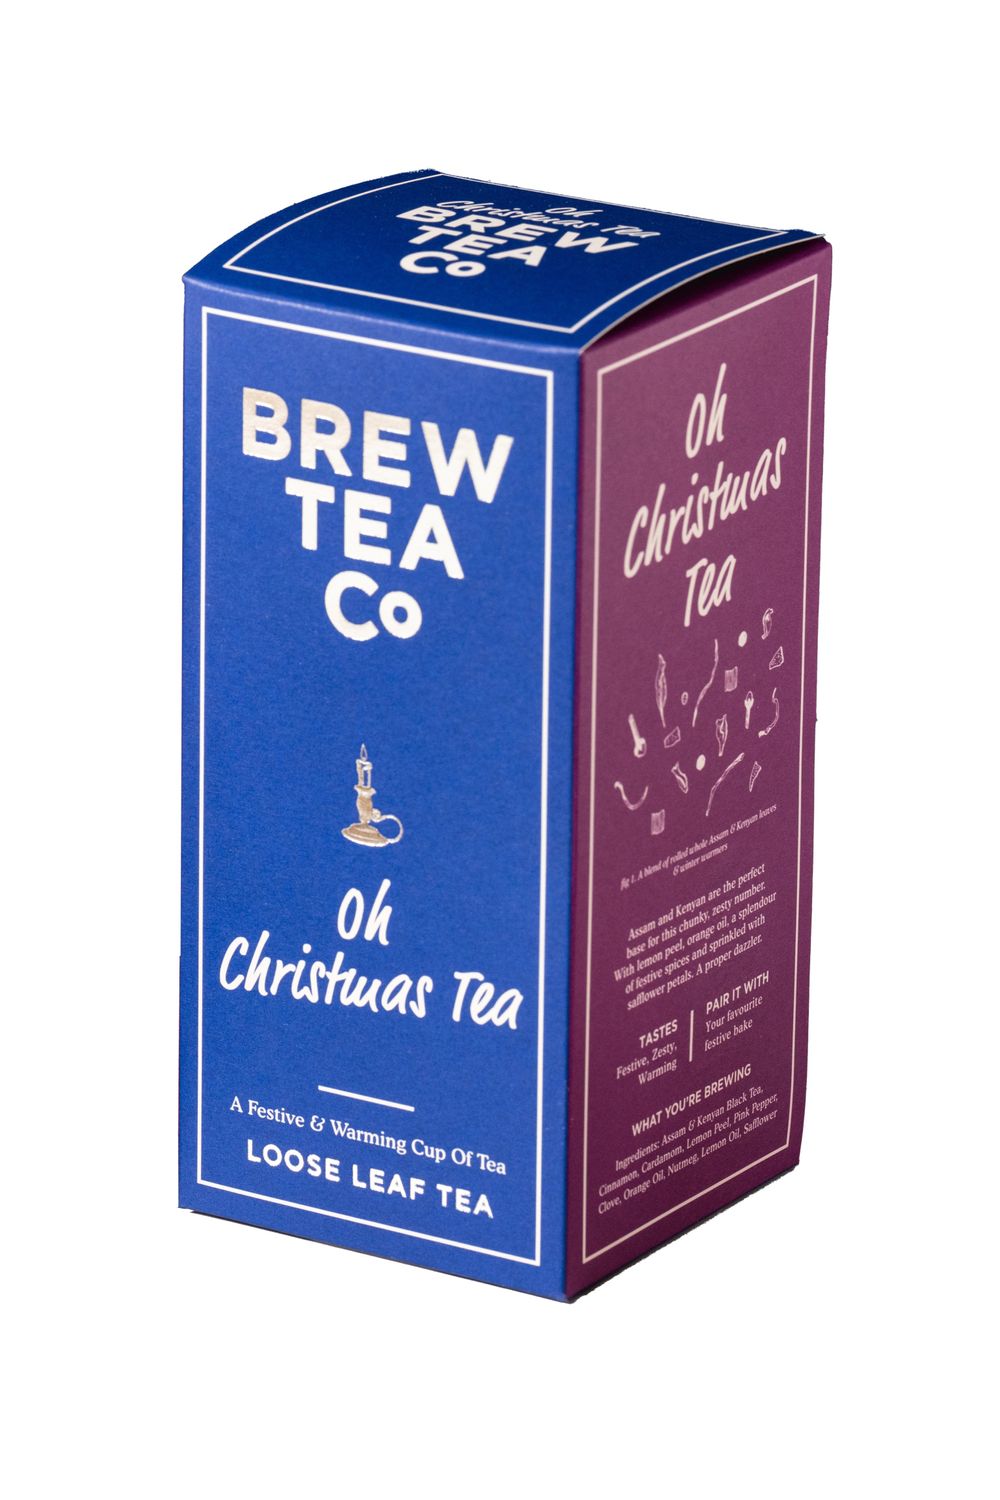 Oh Christmas Loose Leaf Tea